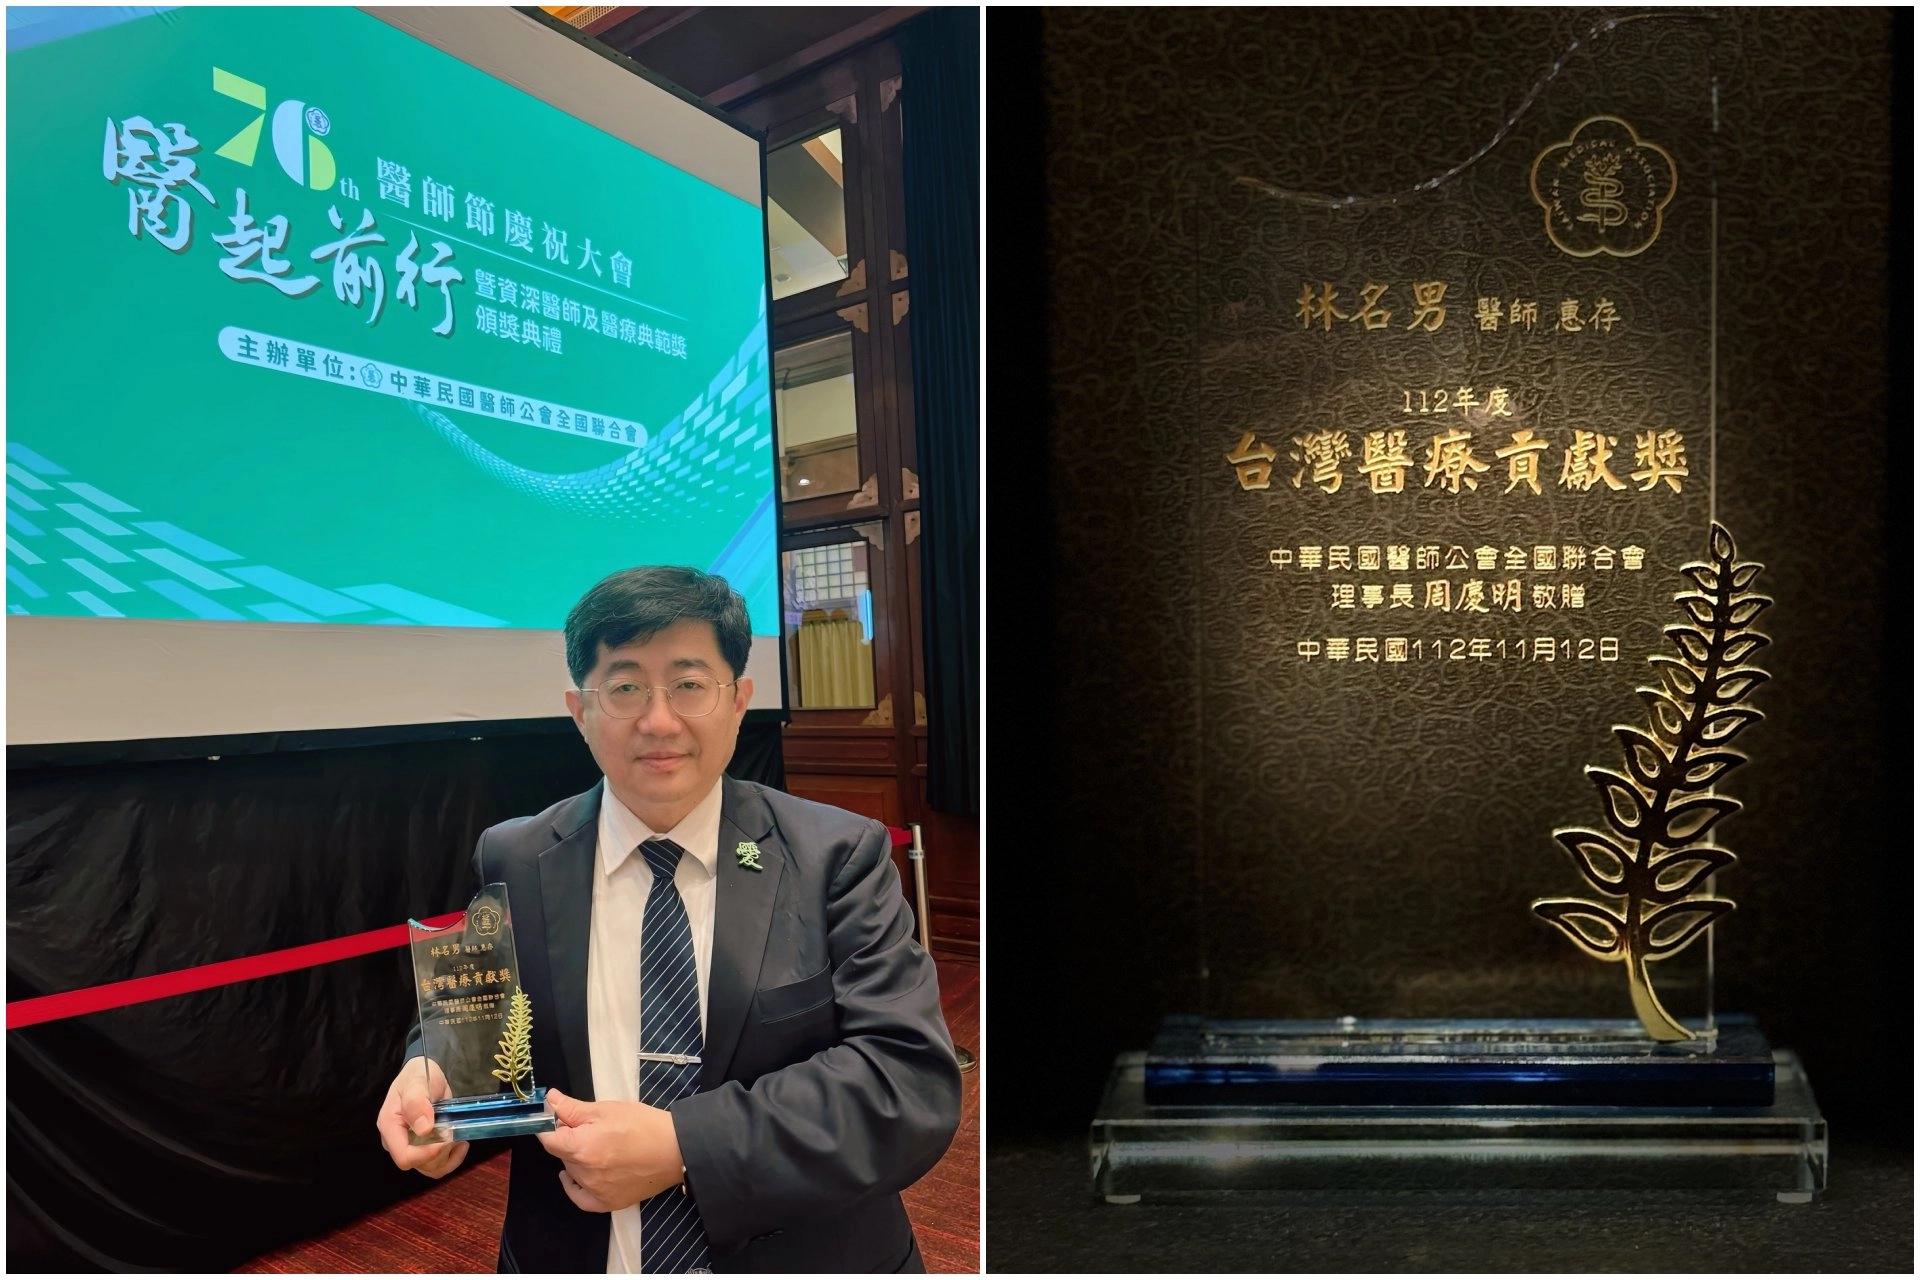 林名男副院長獲得台灣醫療貢獻獎，肯定他帶領大林慈濟醫院推動健康促進醫院成為國際標竿